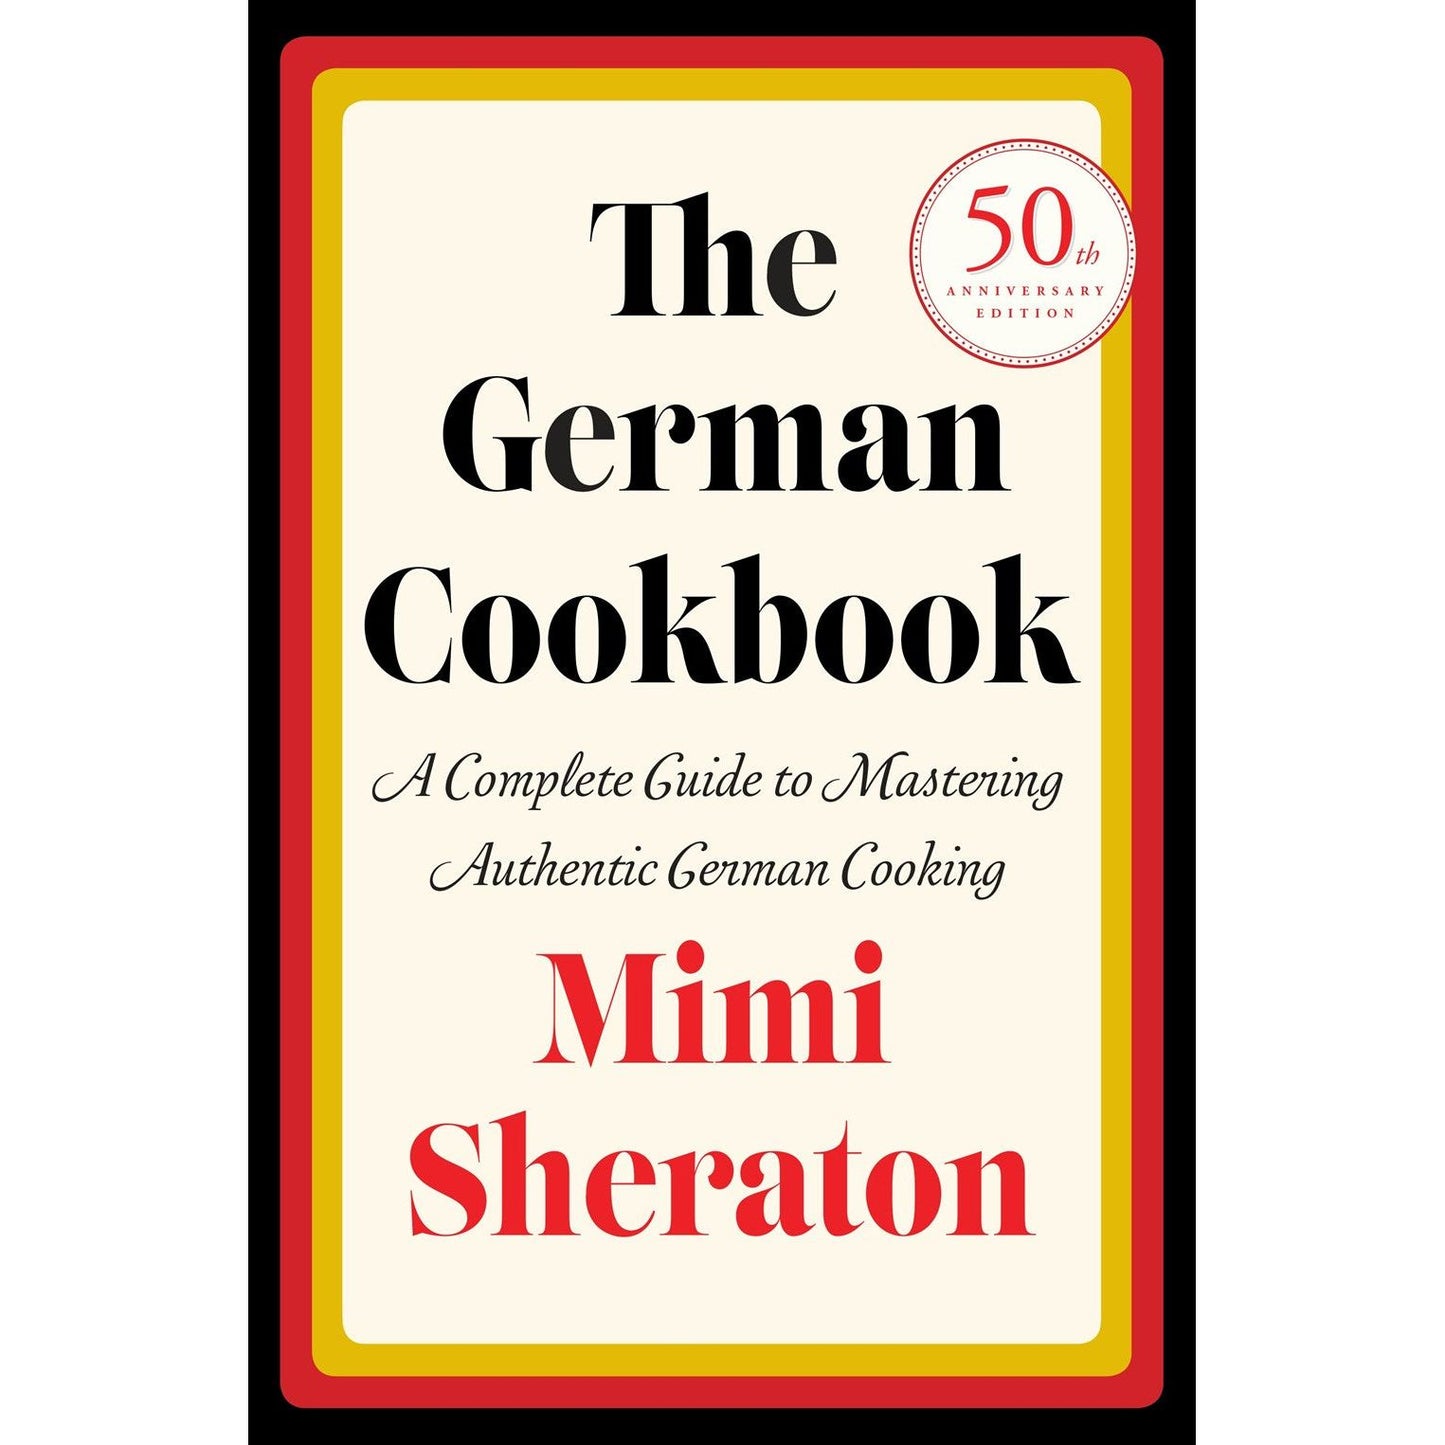 The German Cookbook (Mimi Sheraton)